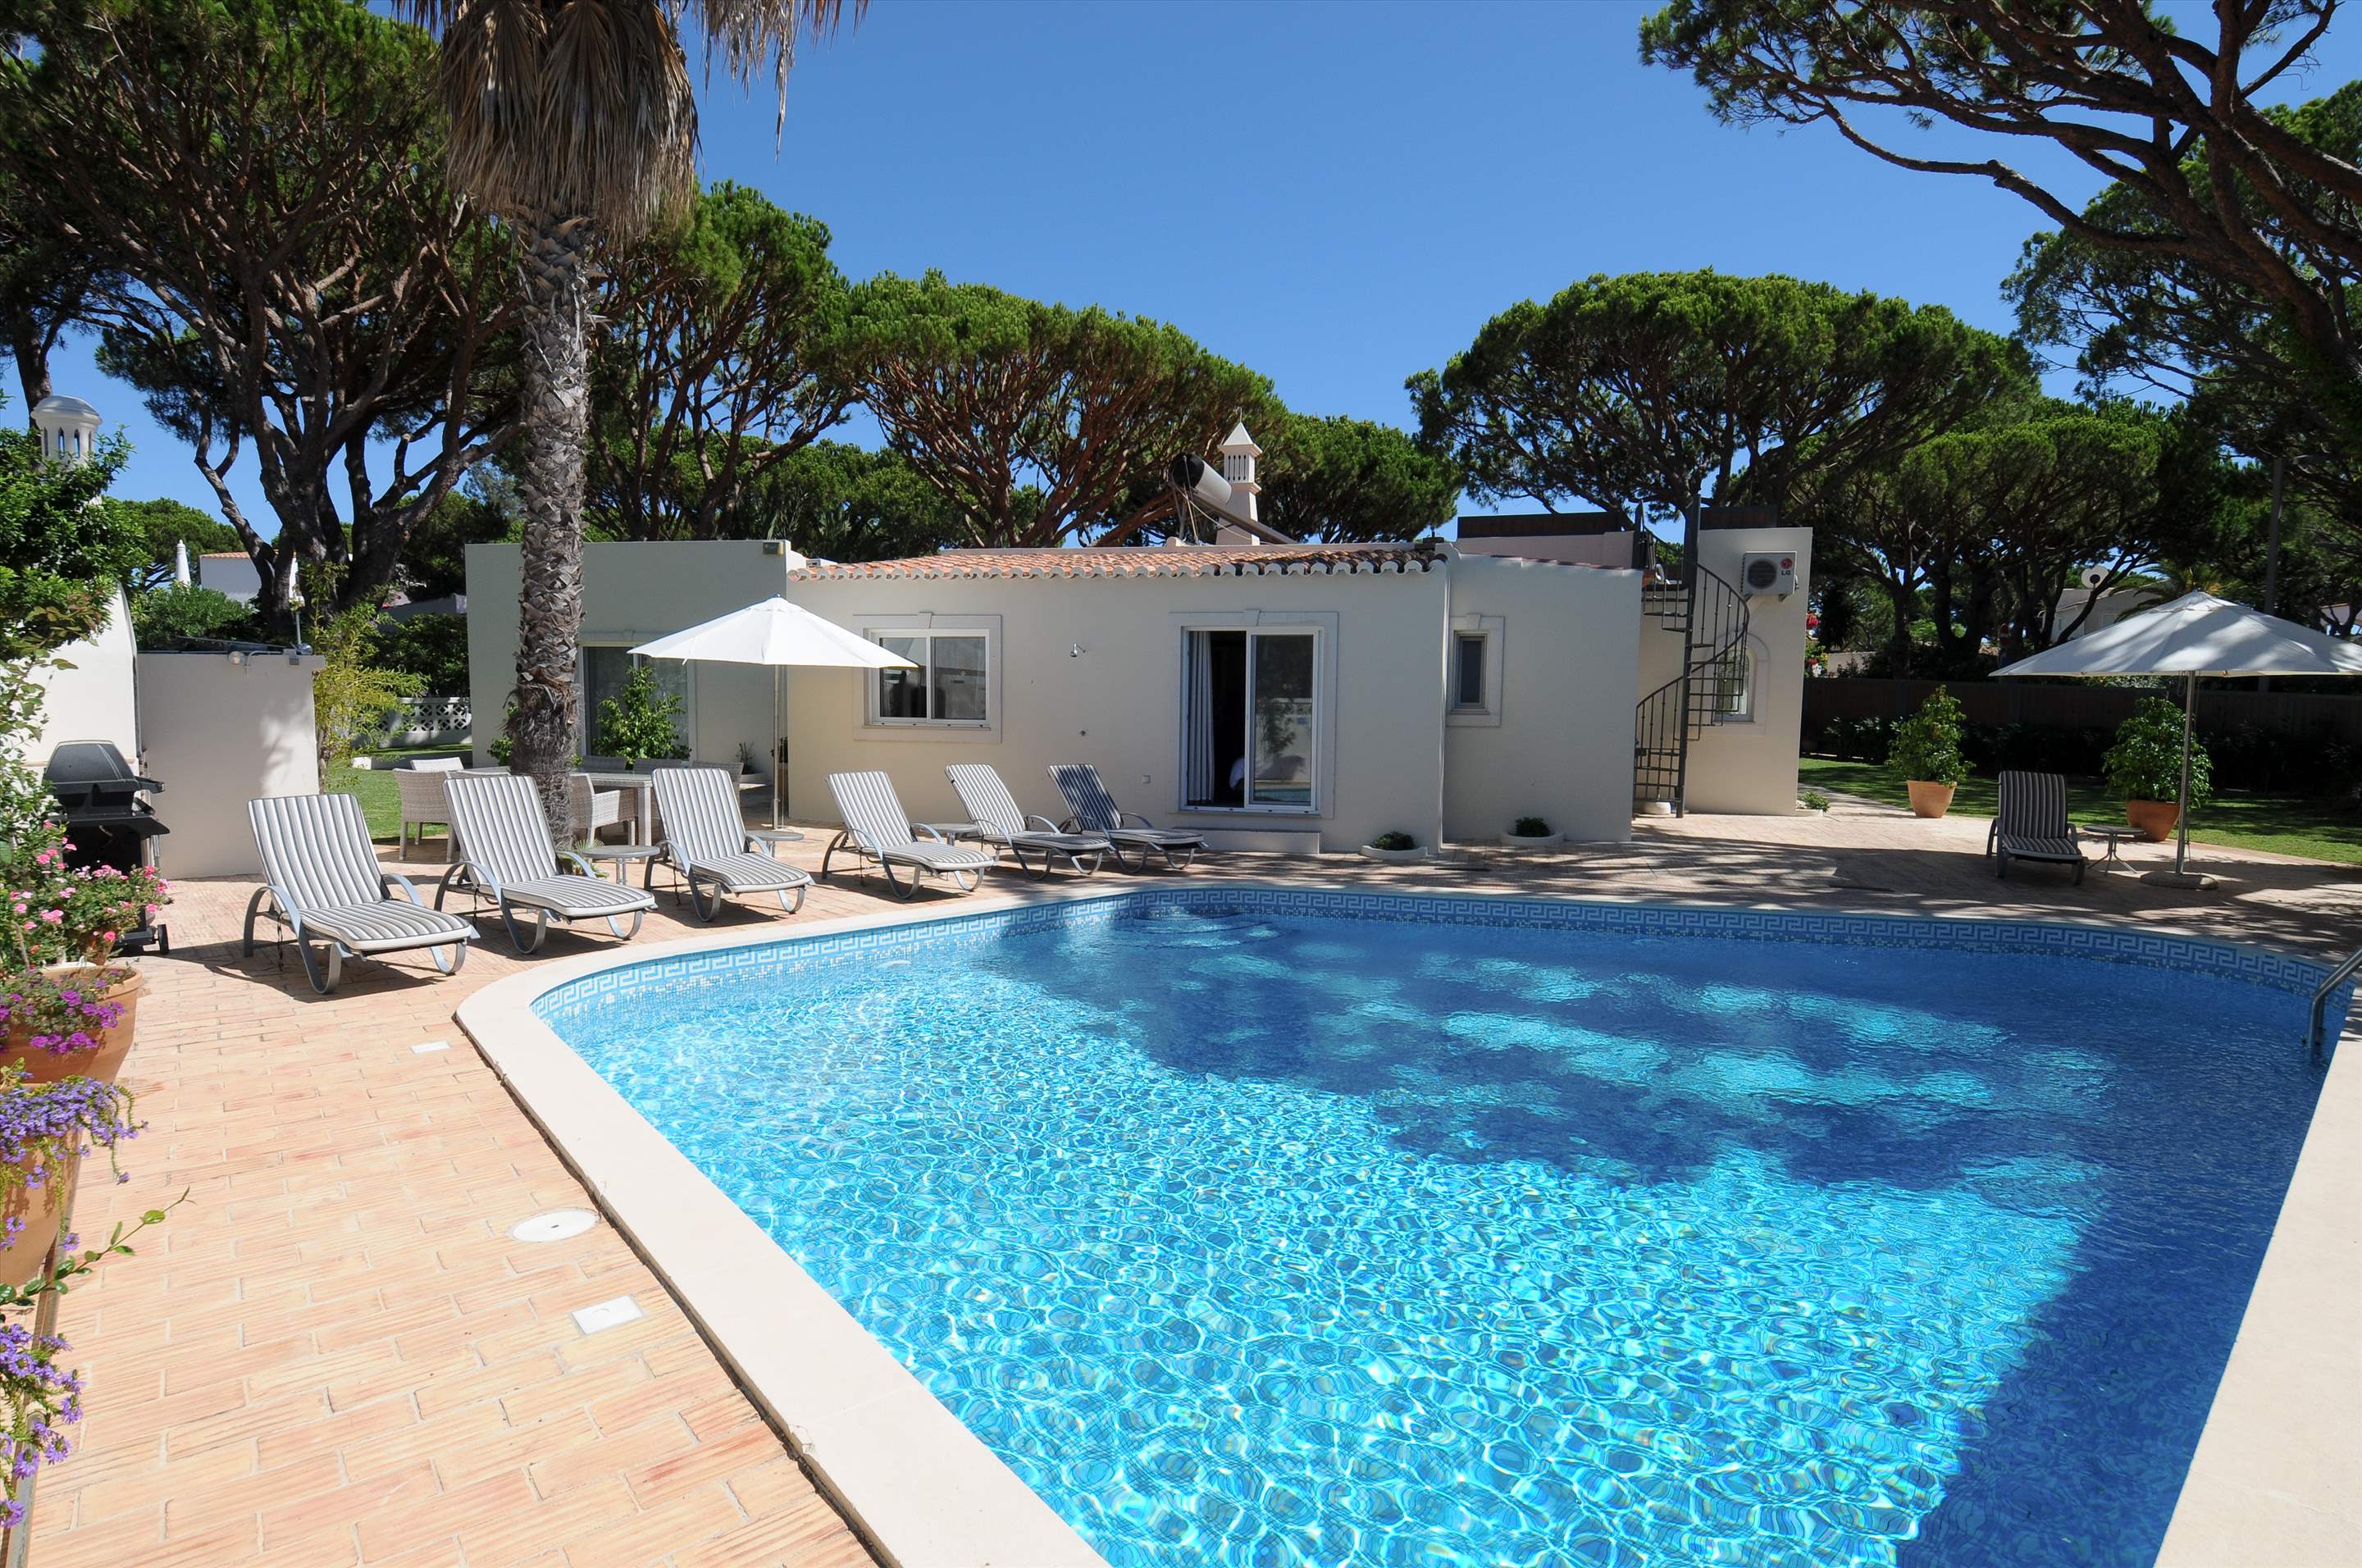 Casa Blanca, 3 Bed Rental, 3 bedroom villa in Vale do Lobo, Algarve Photo #1